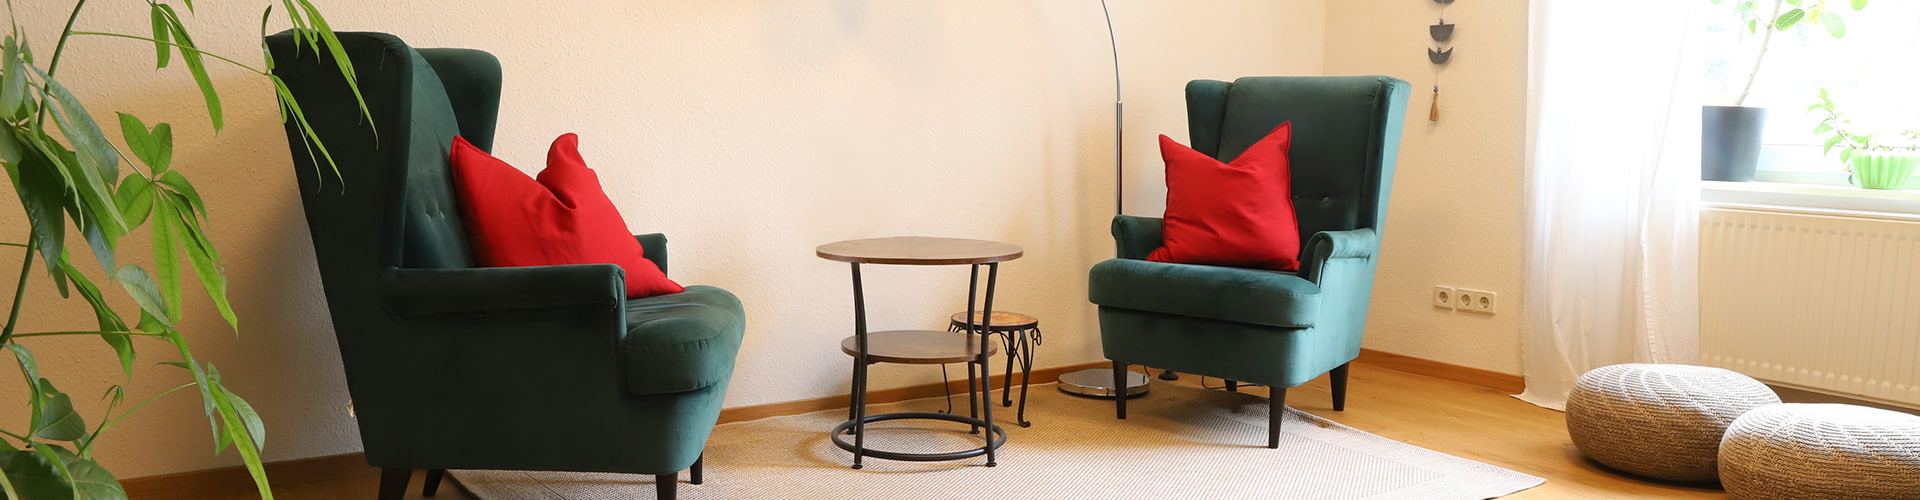 Referenz Praxis für Psychotherapie Peterhänsel Leipzig Sprechzimmer in gemütlicher Atmosphäre mit zwei grünen Sesseln, einem kleinen Tisch und einer weißen Stehlampe auf einem Teppich